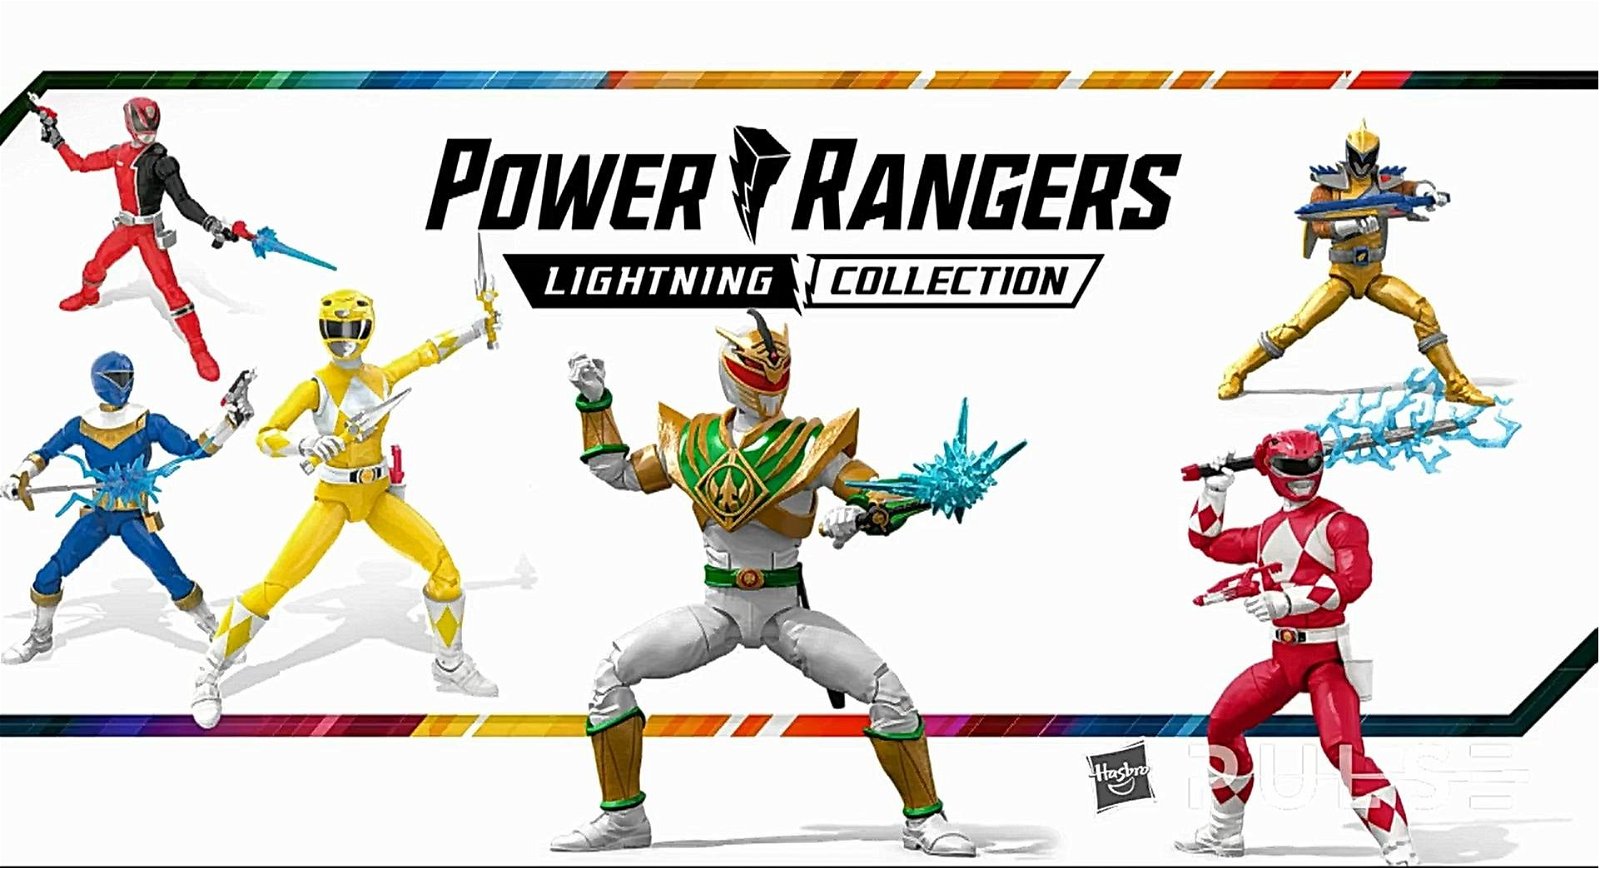 Immagine di NYTF 2020: ecco tutti i prodotti a tema Power Rangers di Hasbro